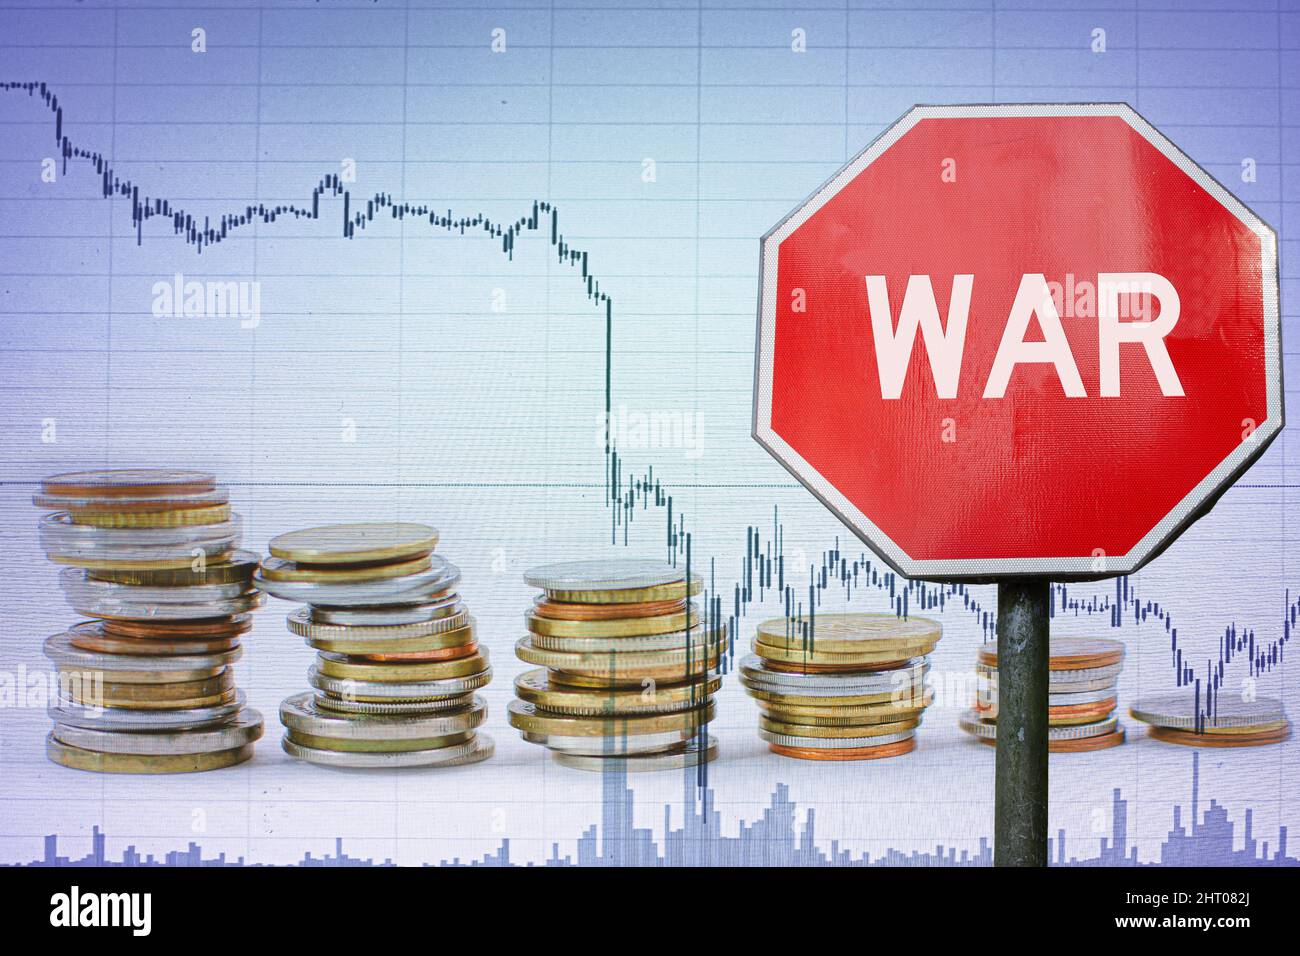 Kriegszeichen auf Wirtschaftshintergrund - Grafik und Münzen. Wirtschaftskrise aufgrund bewaffneter Konflikte. Stockfoto